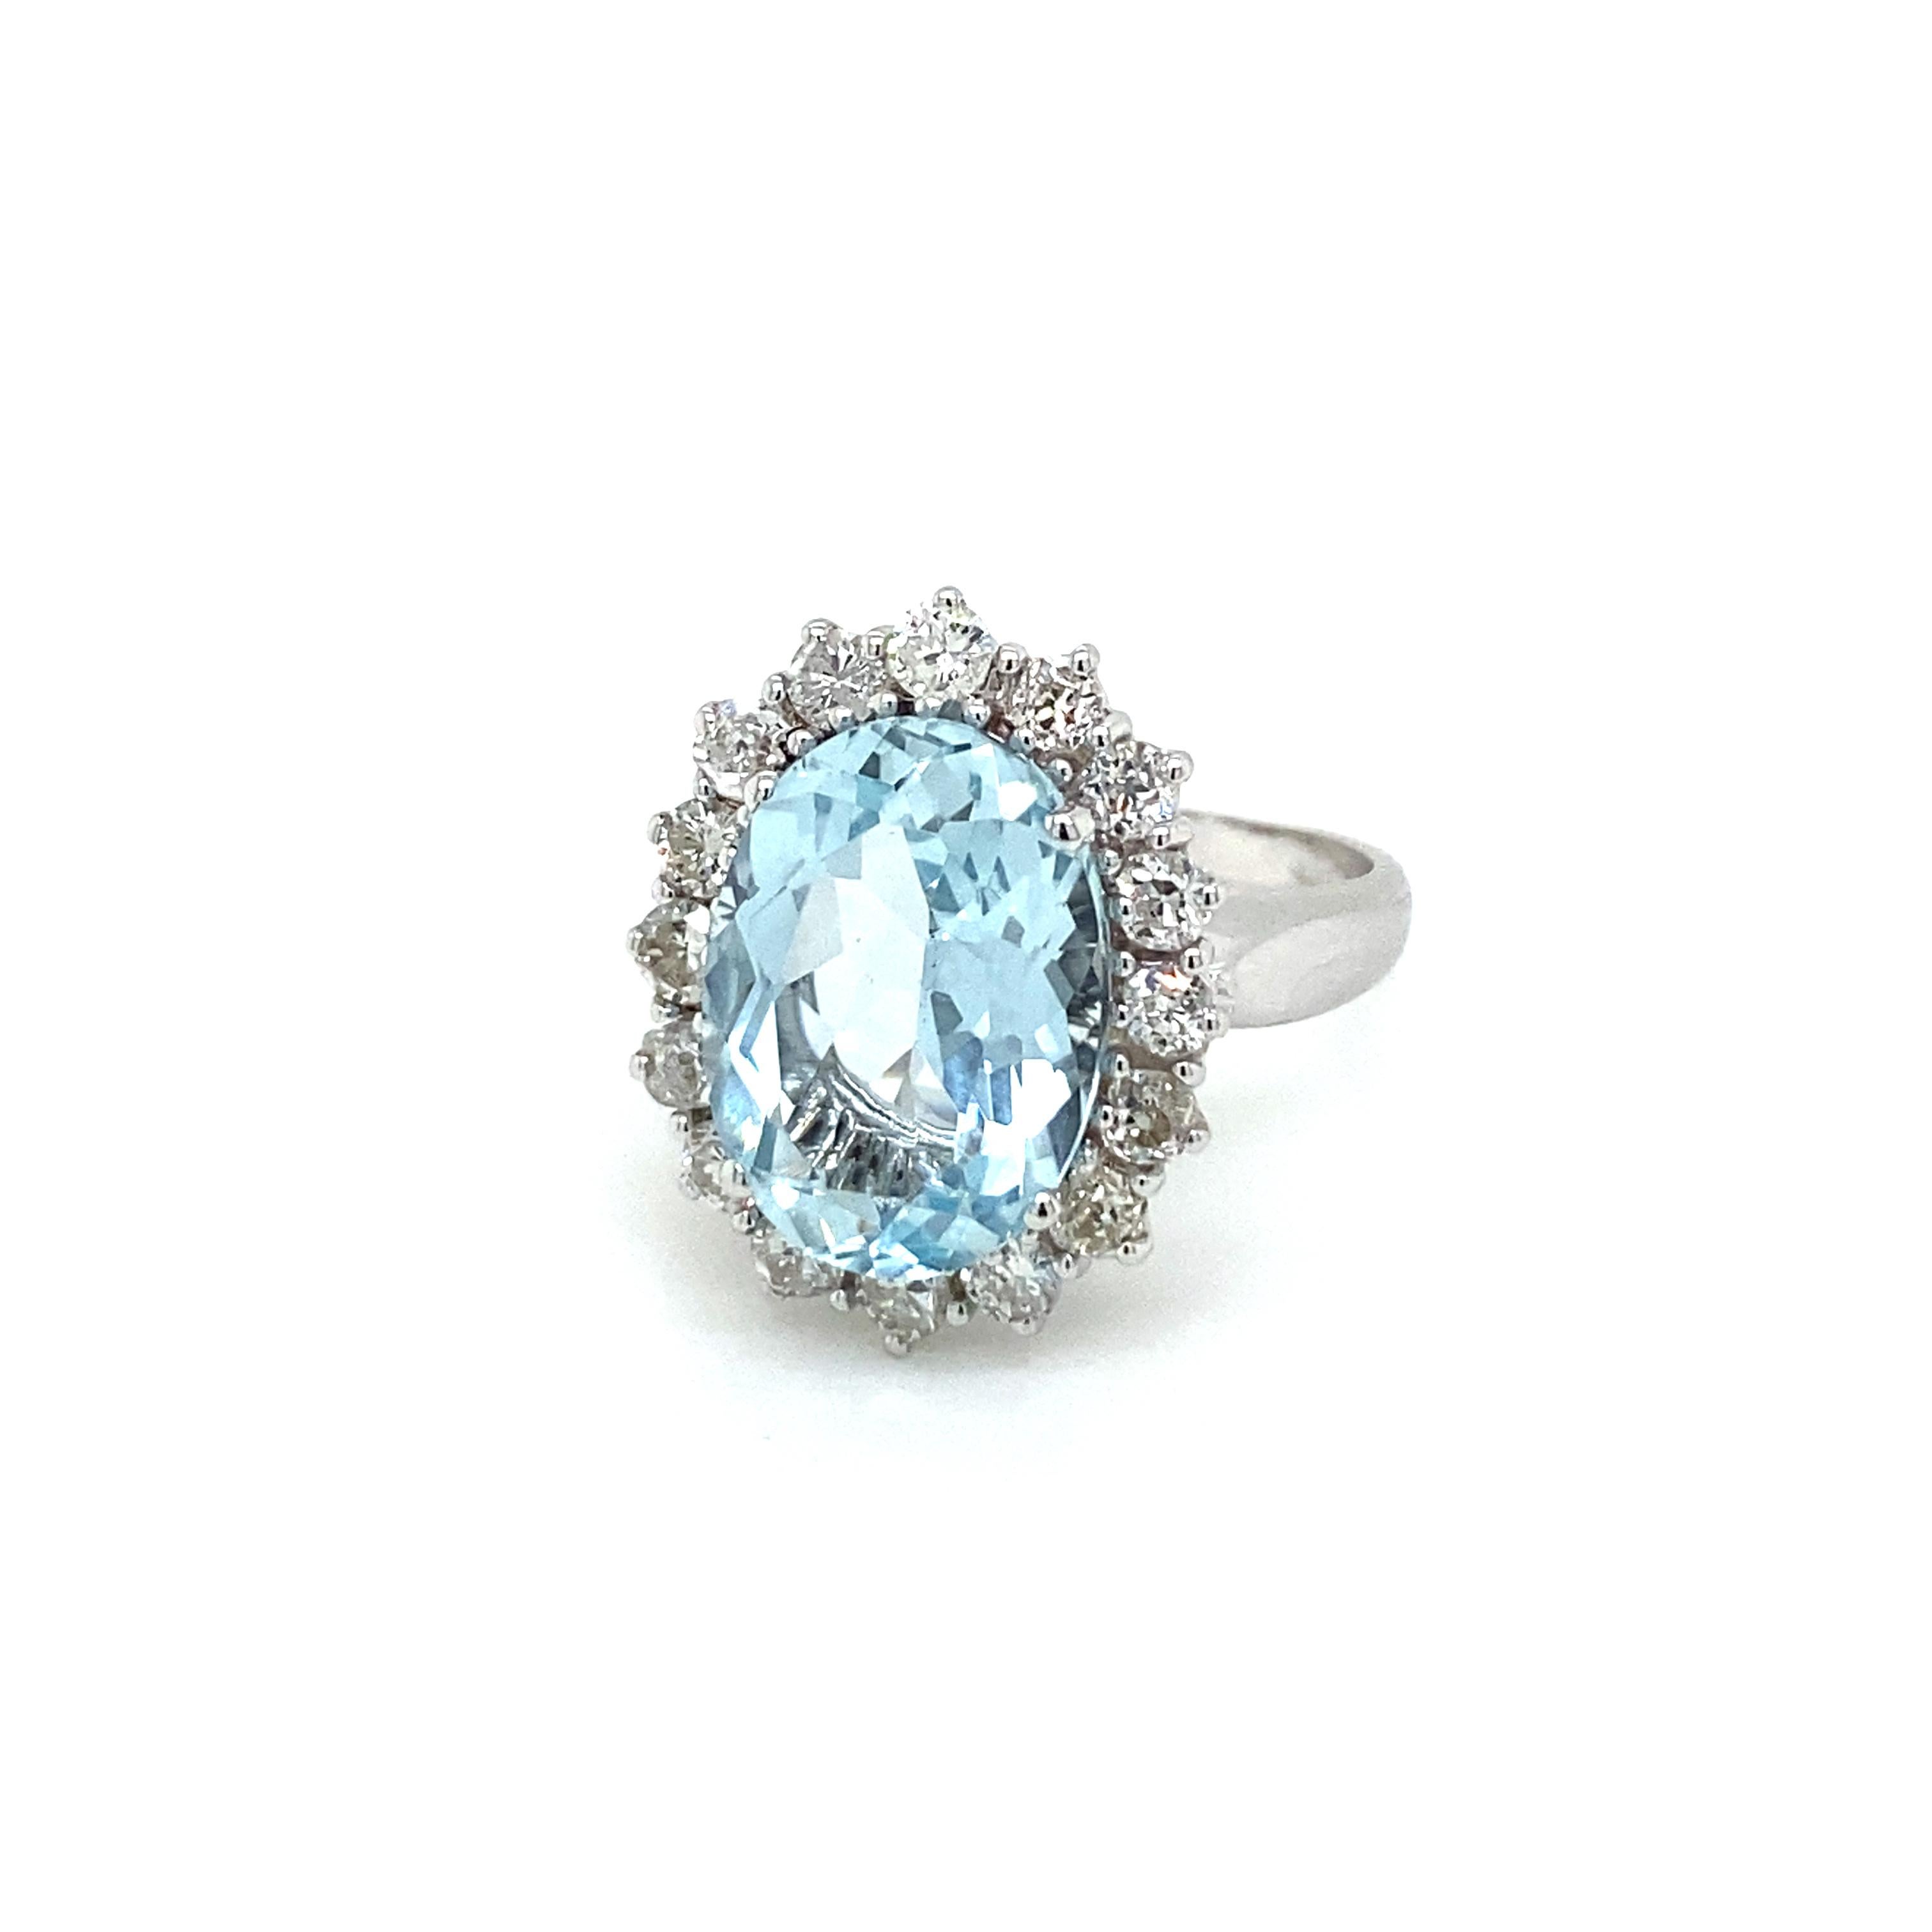 Mixed Cut Estate 5 Carat Aquamarine Diamond Cluster Ring For Sale